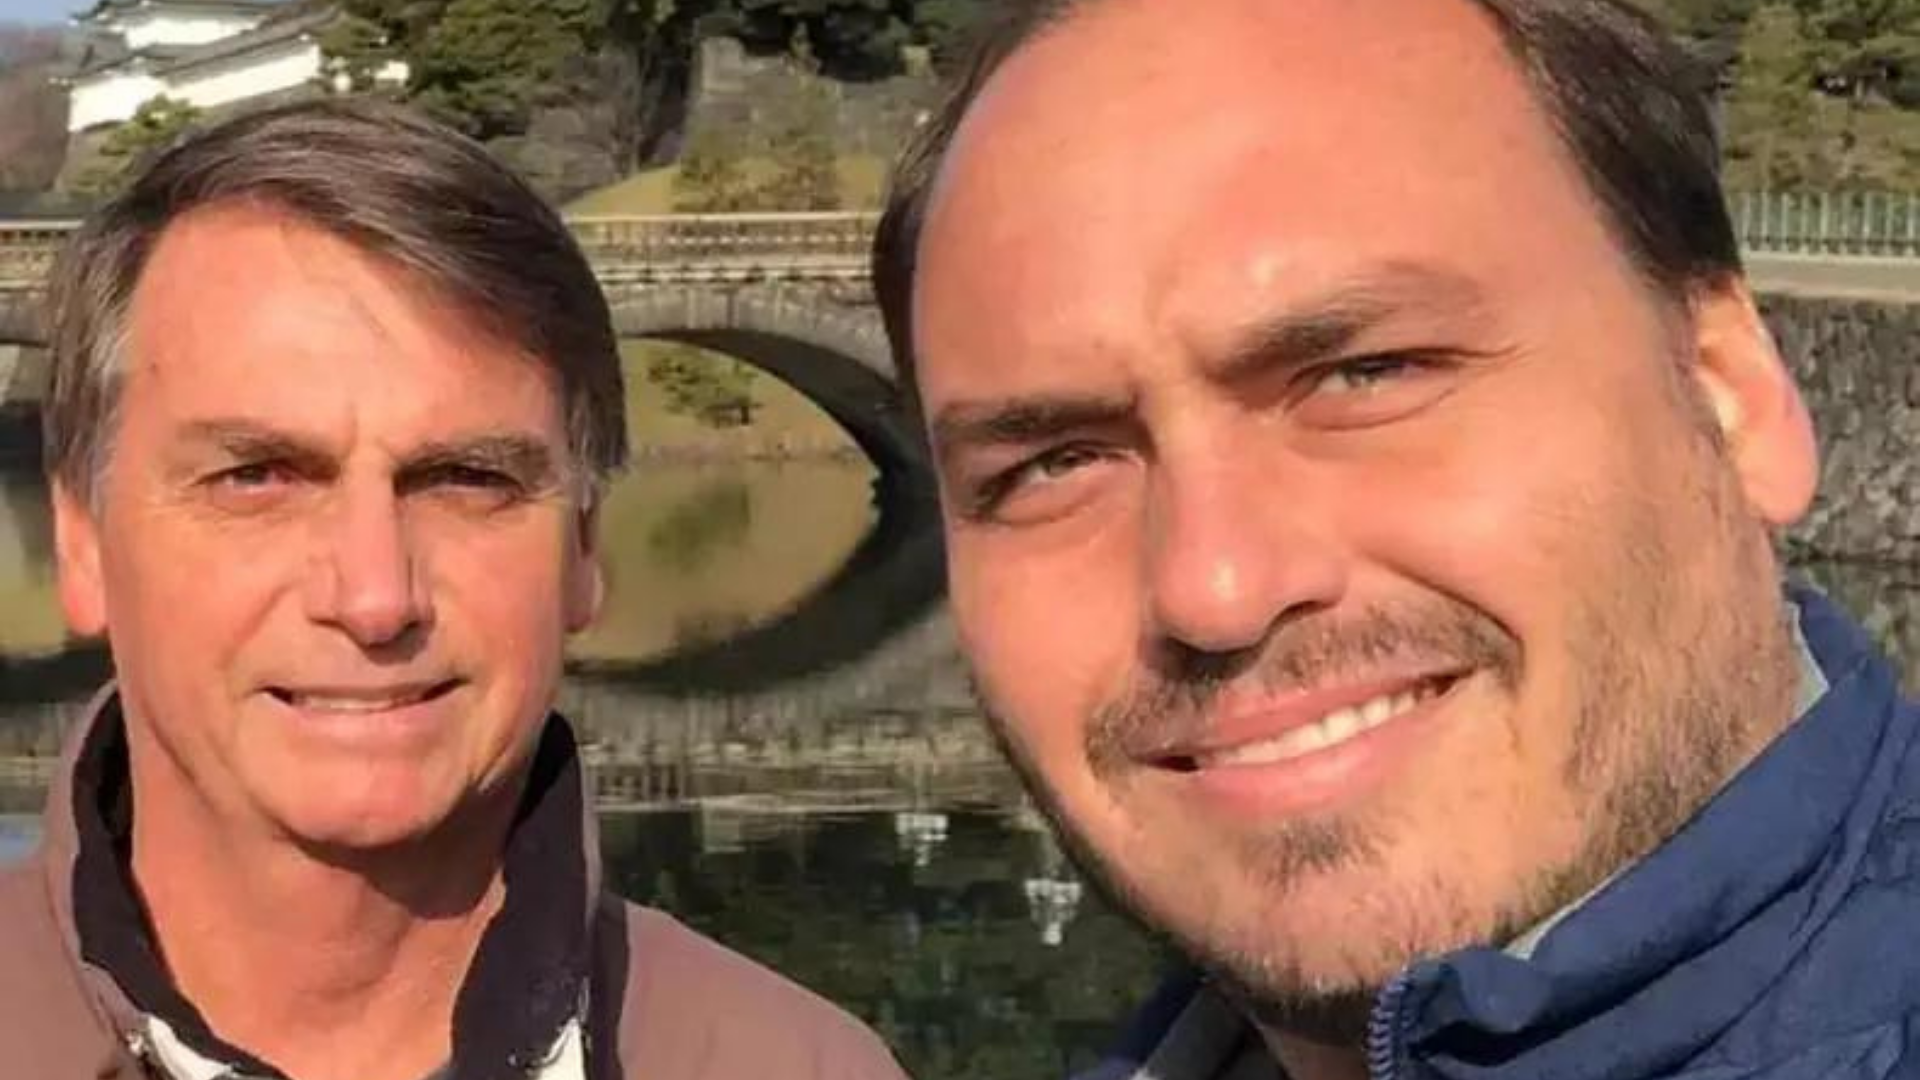 Bolsonaro humilha ministros para defender Carluxo na Rússia. Ele está em selfie com o filho Carlos Bolsonaro. Eles tem pele branca, e cabelos castanhos. Usam casacos para o fio, mas o dia está ensolarado.